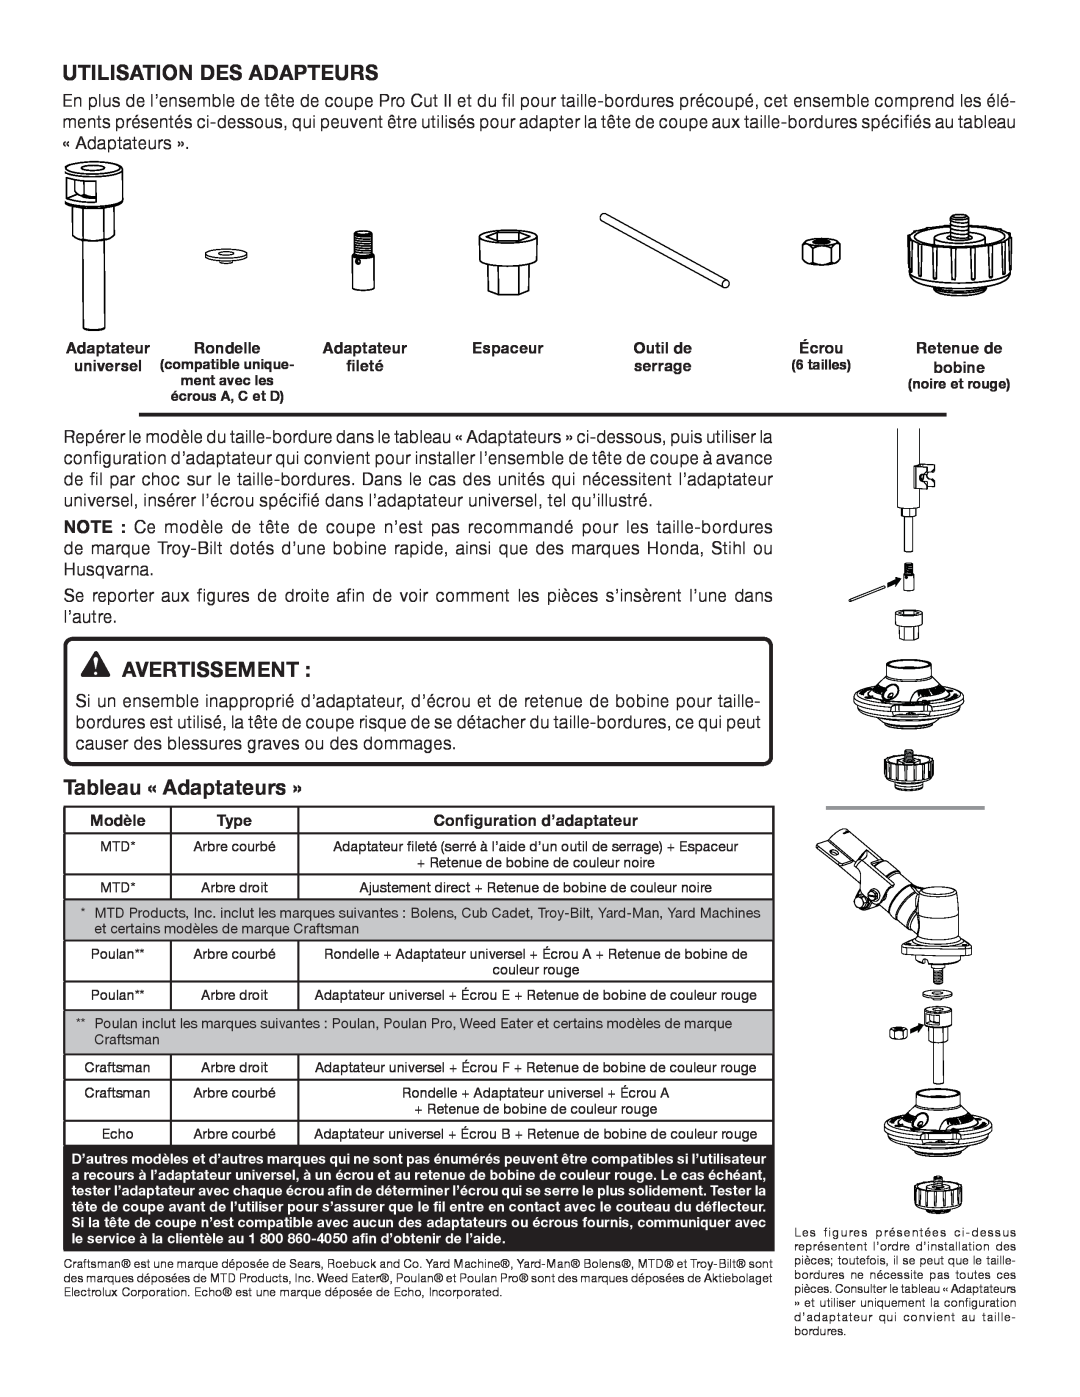 Ryobi AC04141T instruction sheet Utilisation Des Adapteurs, Avertissement, Tableau « Adaptateurs » 